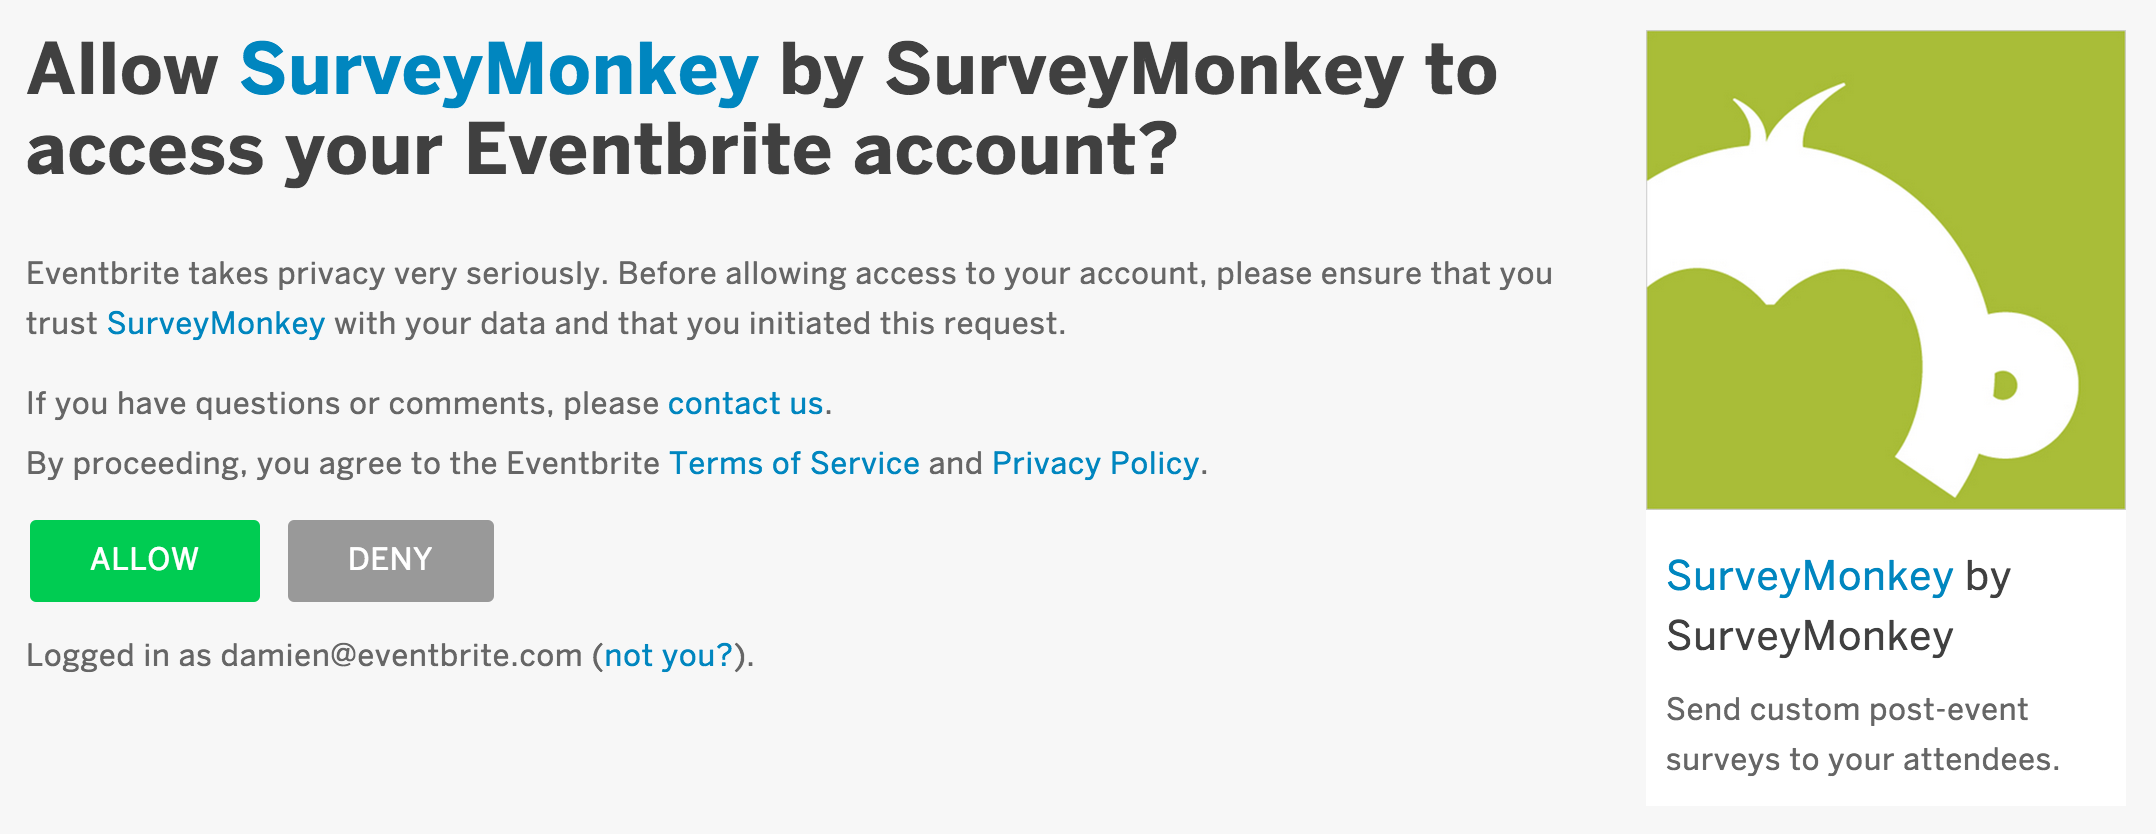 survey monkey dating app